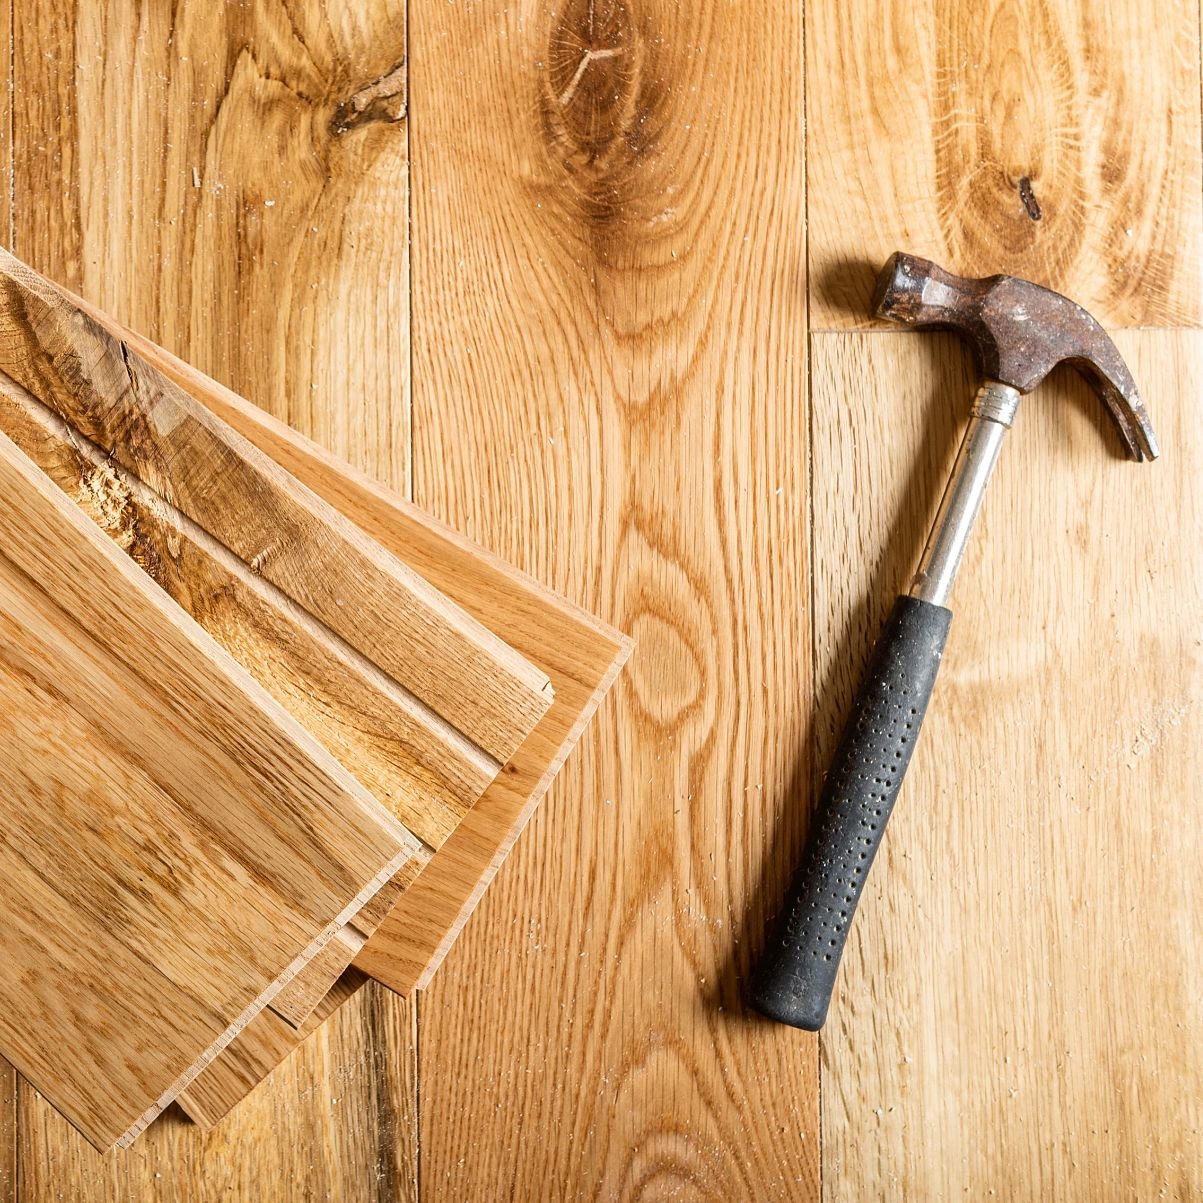 Hammer on hardwood planks - Hardwood flooring installation services from 180 Degree Floors in the Nashville, TN area